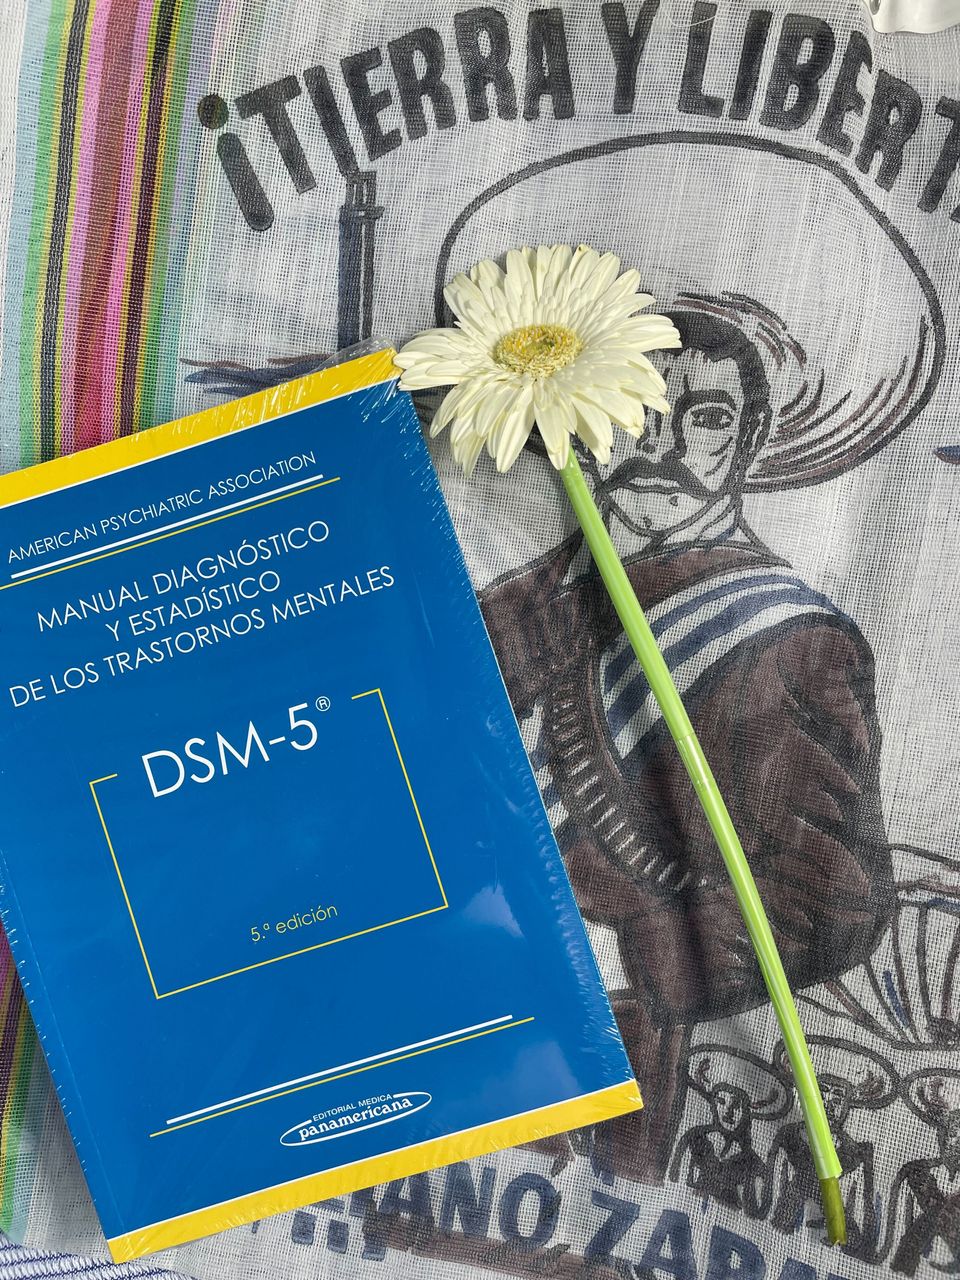 DSM-5. Manual Diagnóstico y Estadístico de los Trastornos Mentales